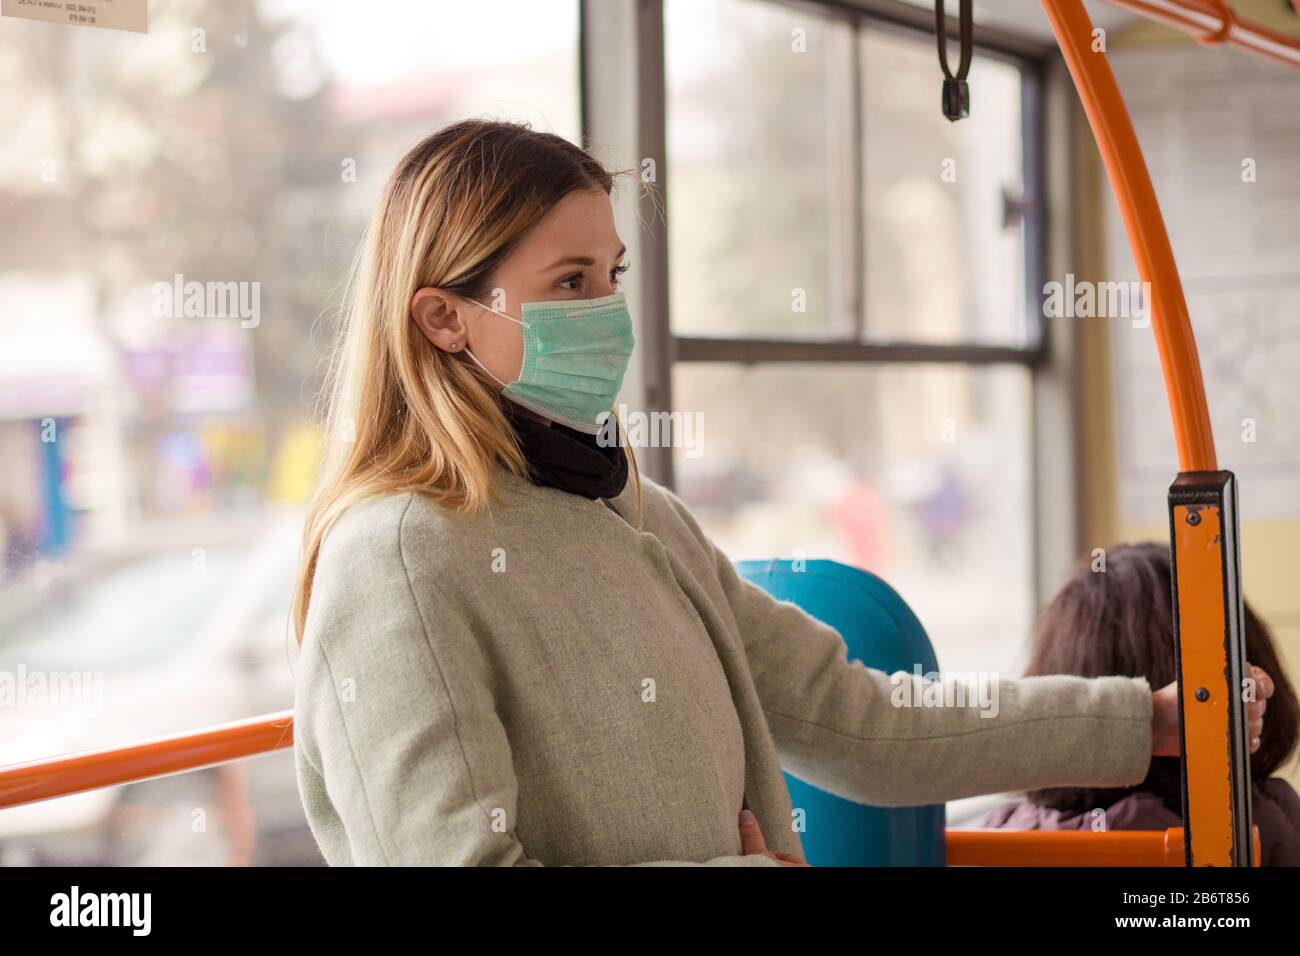 Donna che indossa una maschera medica protettiva sterile contro il coronavirus, il virus sars pandemico asiatico di Covid-2019 mentre si trova in un bus pubblico in un ci europeo Foto Stock